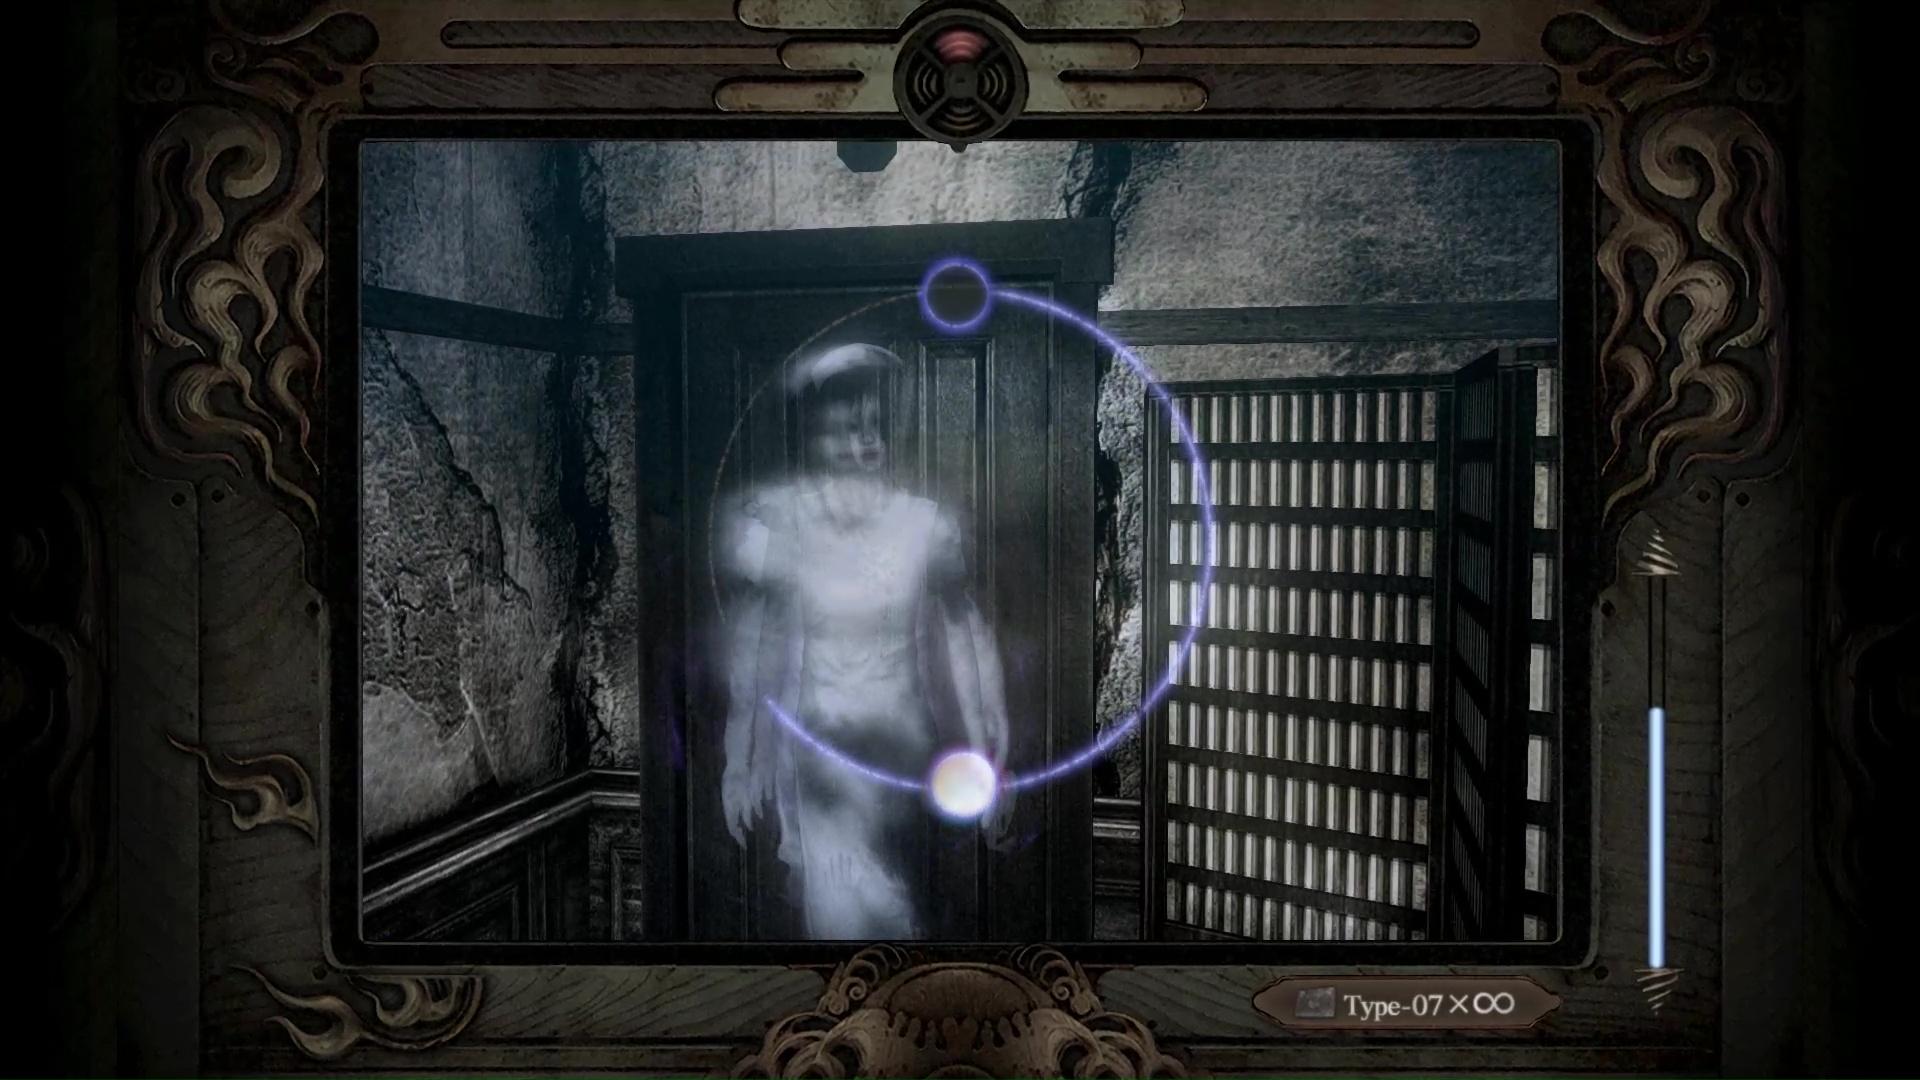 फ़ैटल फ़्रेम: मास्क ऑफ़ द लूनर एक्लिप्स में, खिलाड़ी एक नर्स के शत्रुतापूर्ण भूत से लड़ने के लिए कैमरा ऑब्स्कुरा का उपयोग करता है।